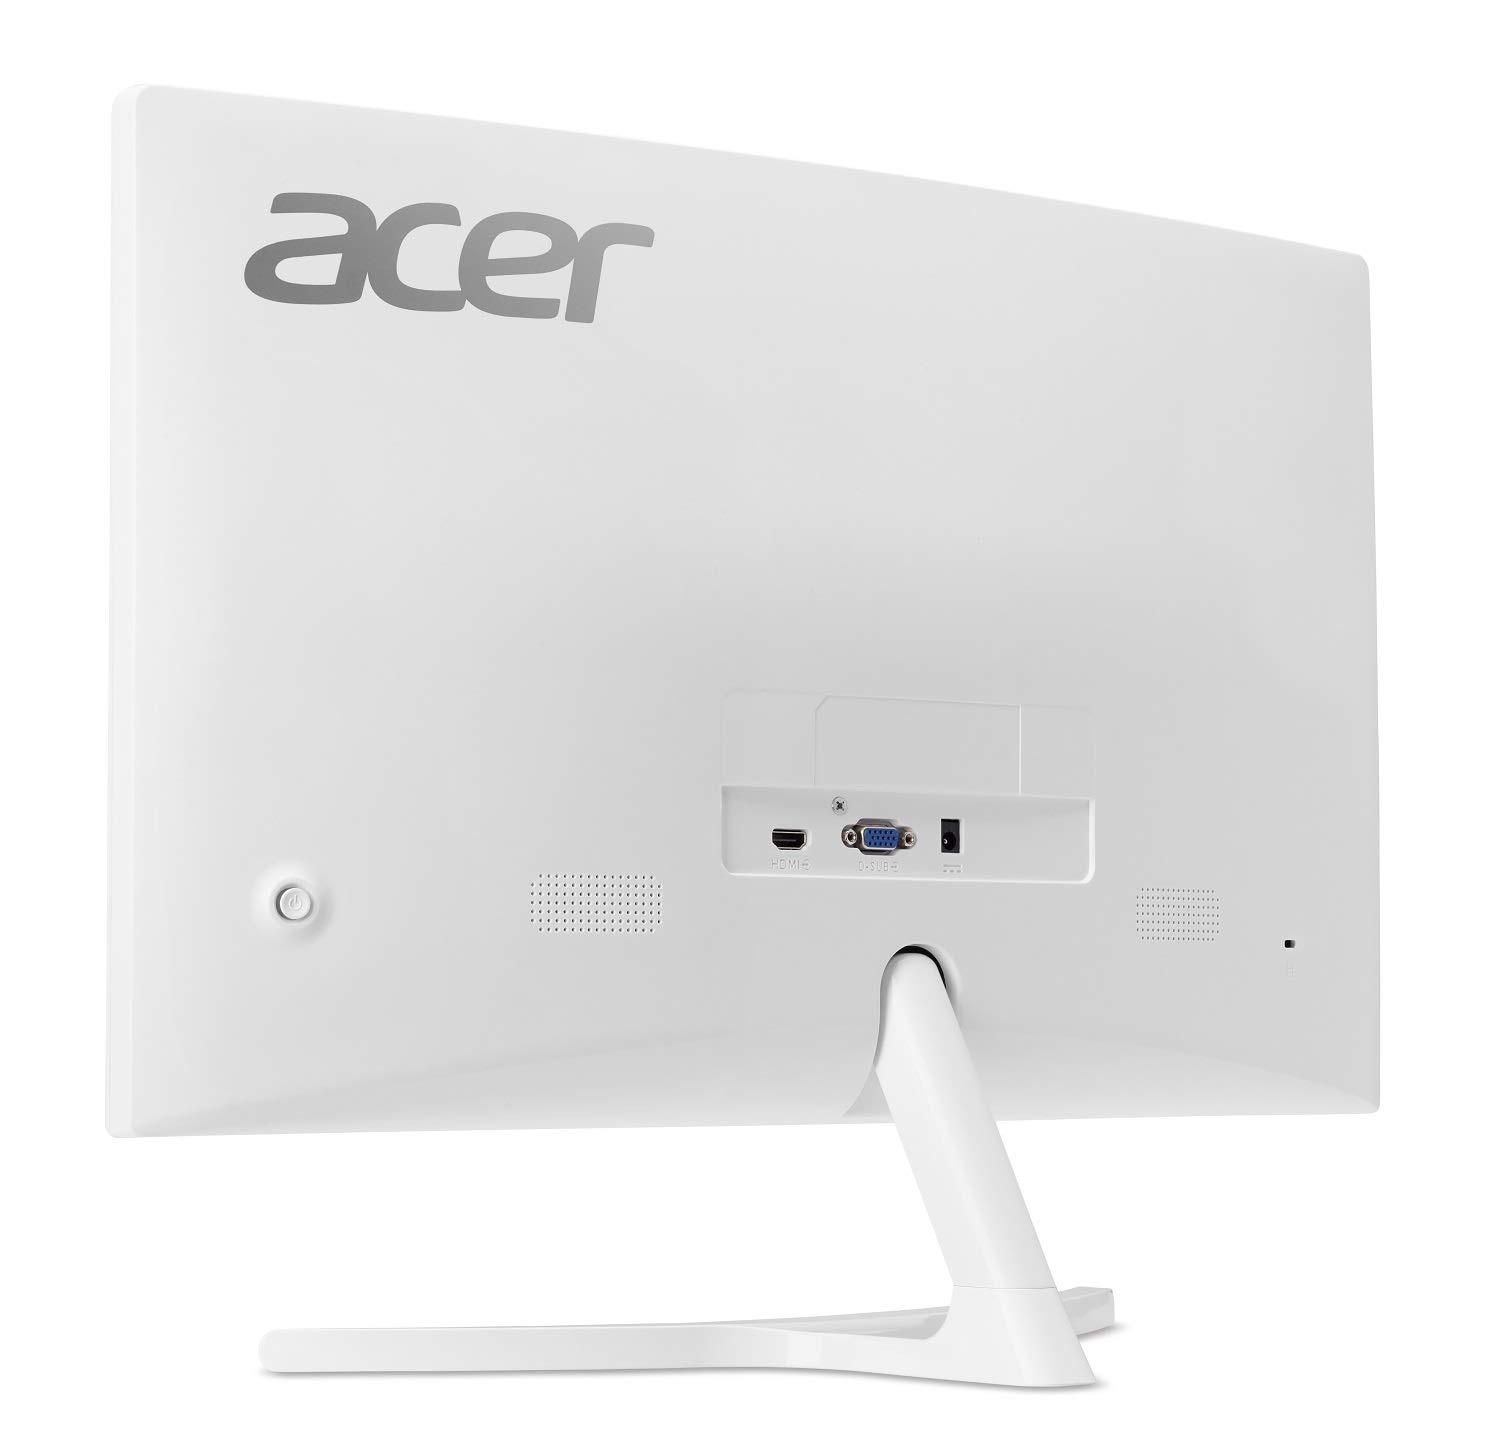 Màn hình LCD Acer ED242QR (23.6inch/4ms/FHD/250 cd/m²/VGA+HDMI/LED/VA/Trắng)